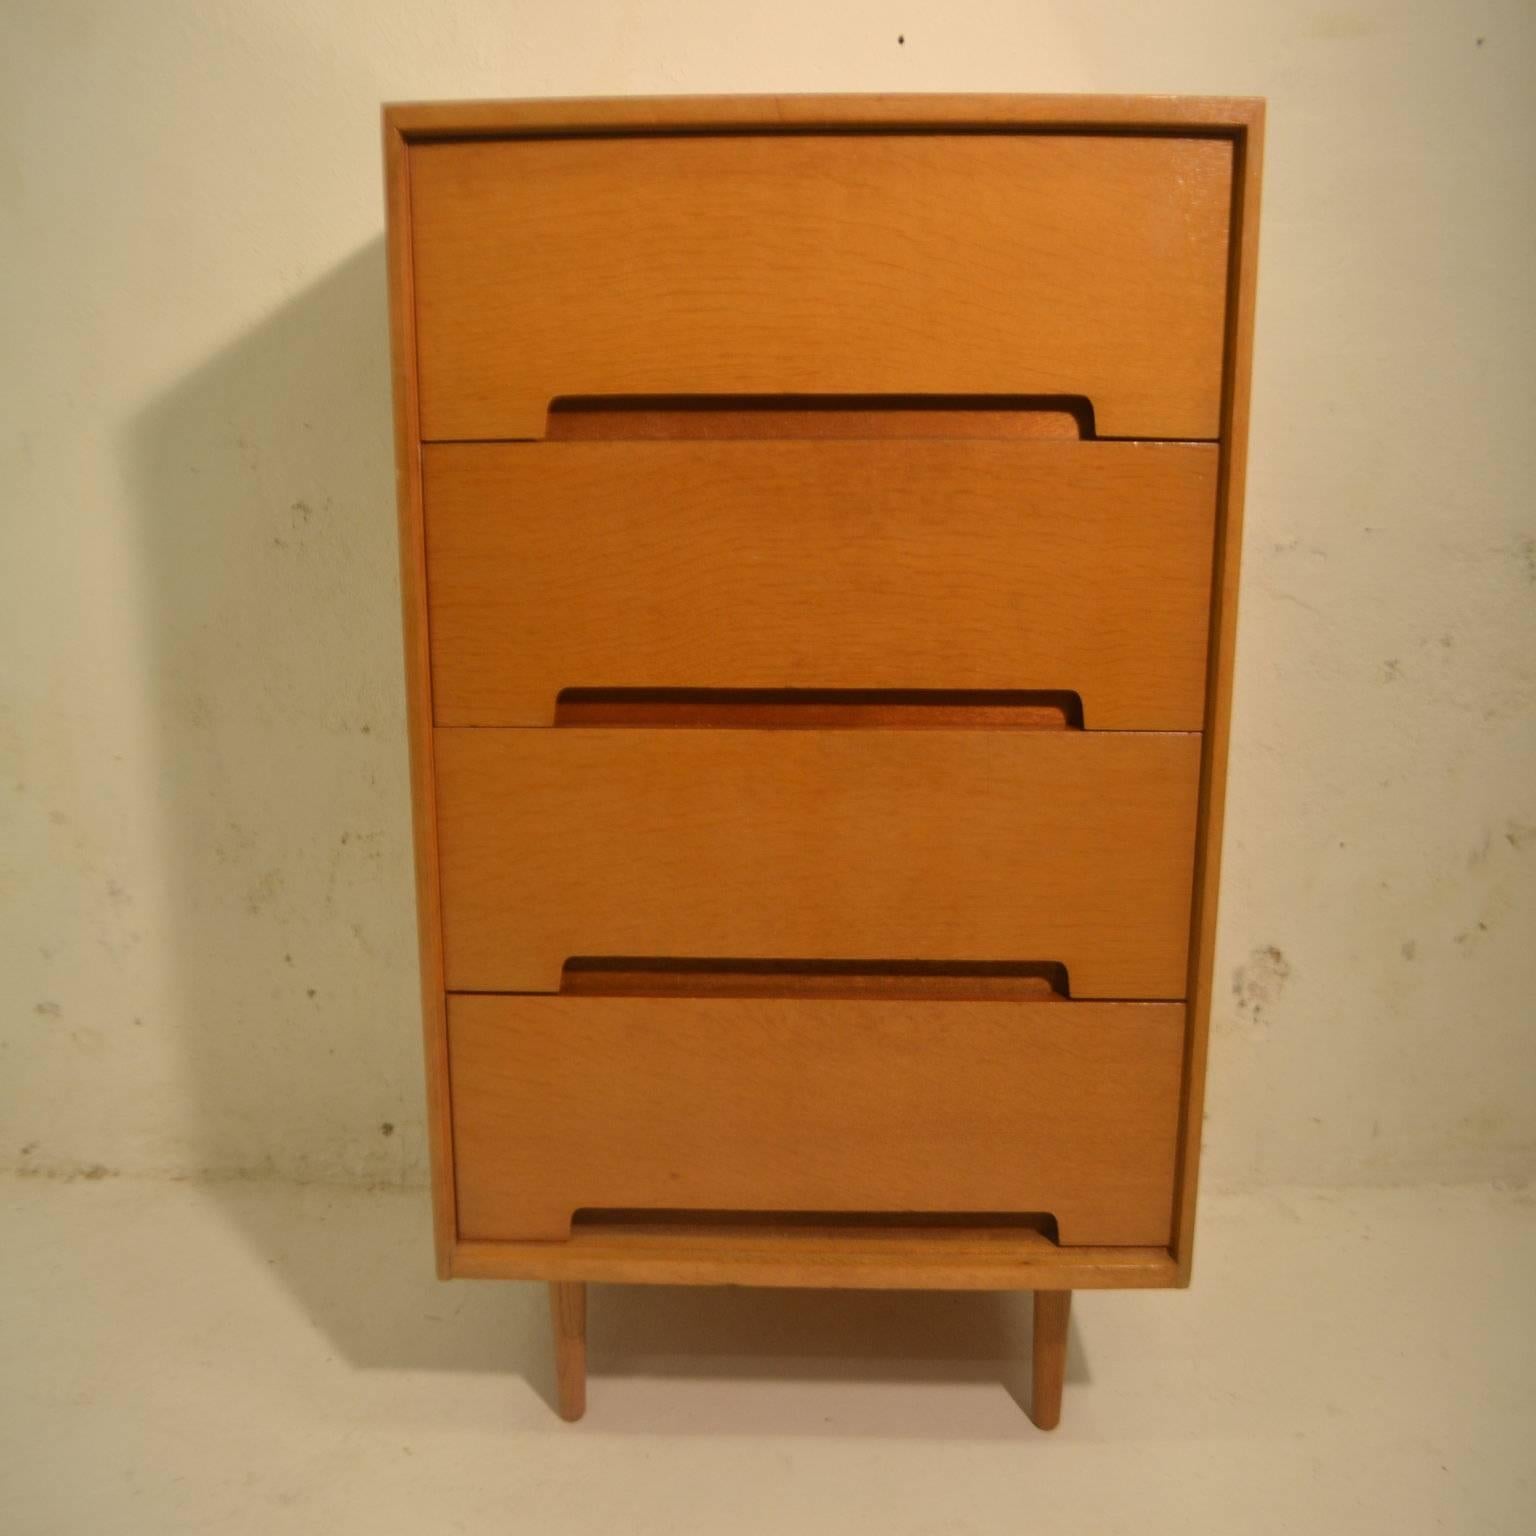 Light oak 'C Range' chest of drawers designed by John & Sylvia Reid for Stag Furniture Ltd.